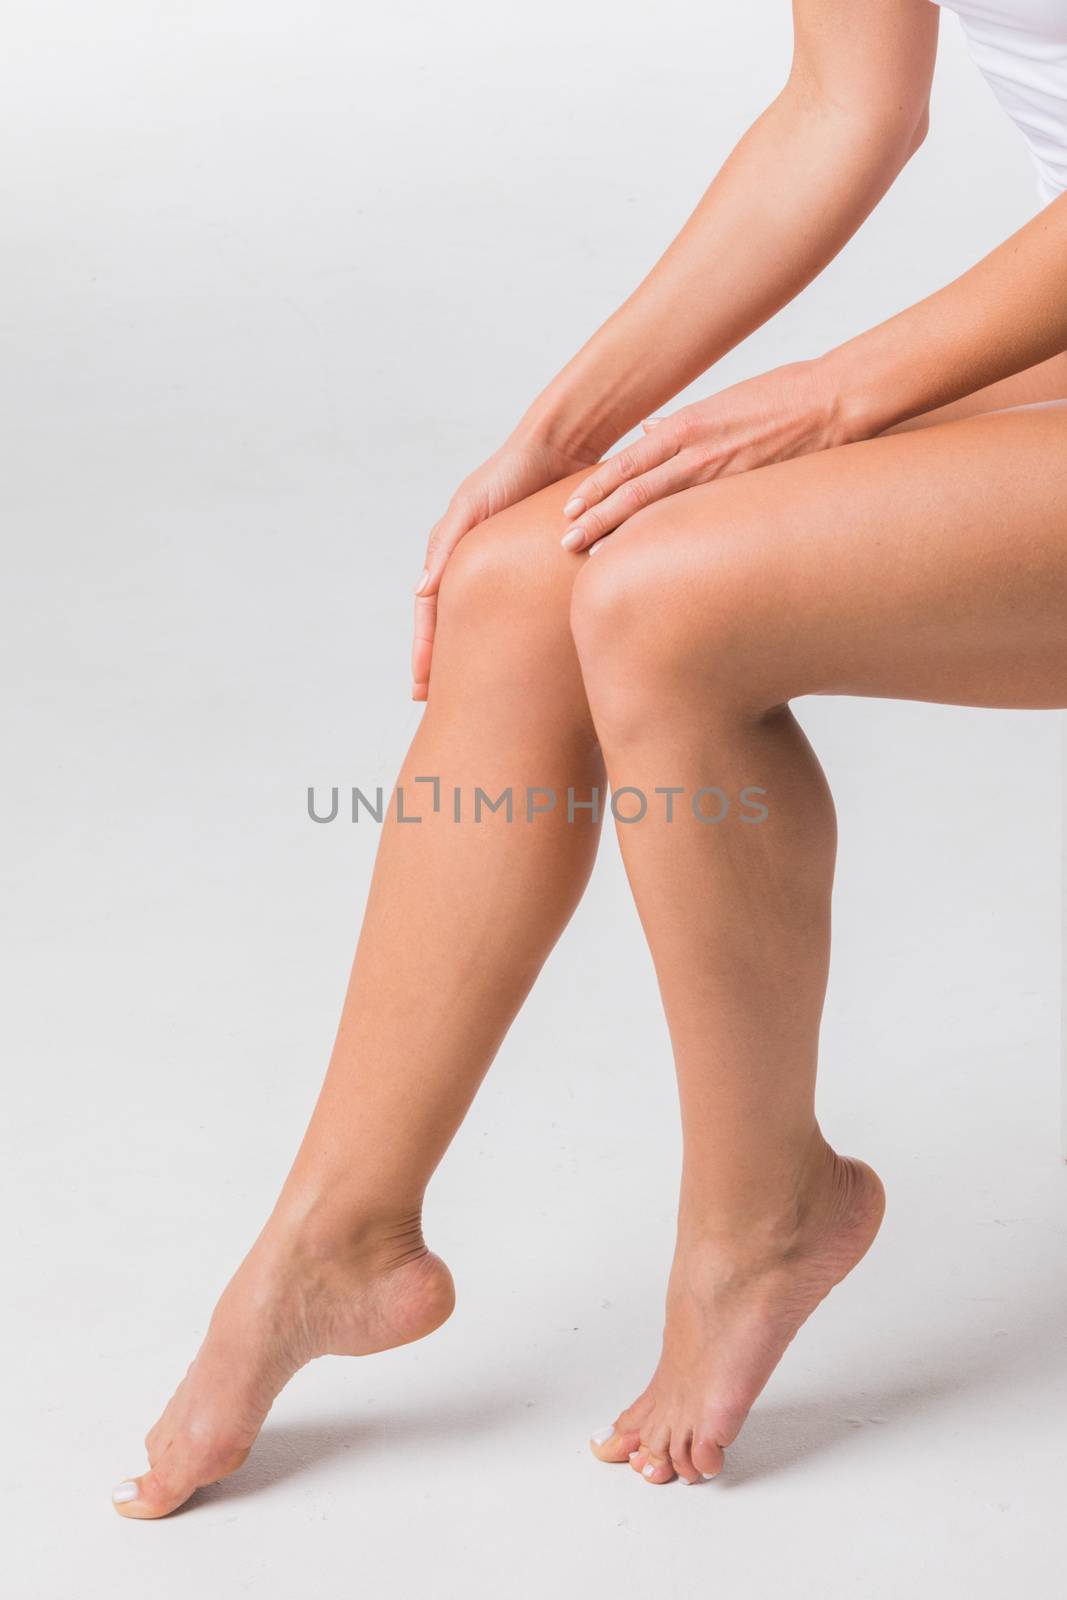 Beautiful woman touching legs by Yellowj